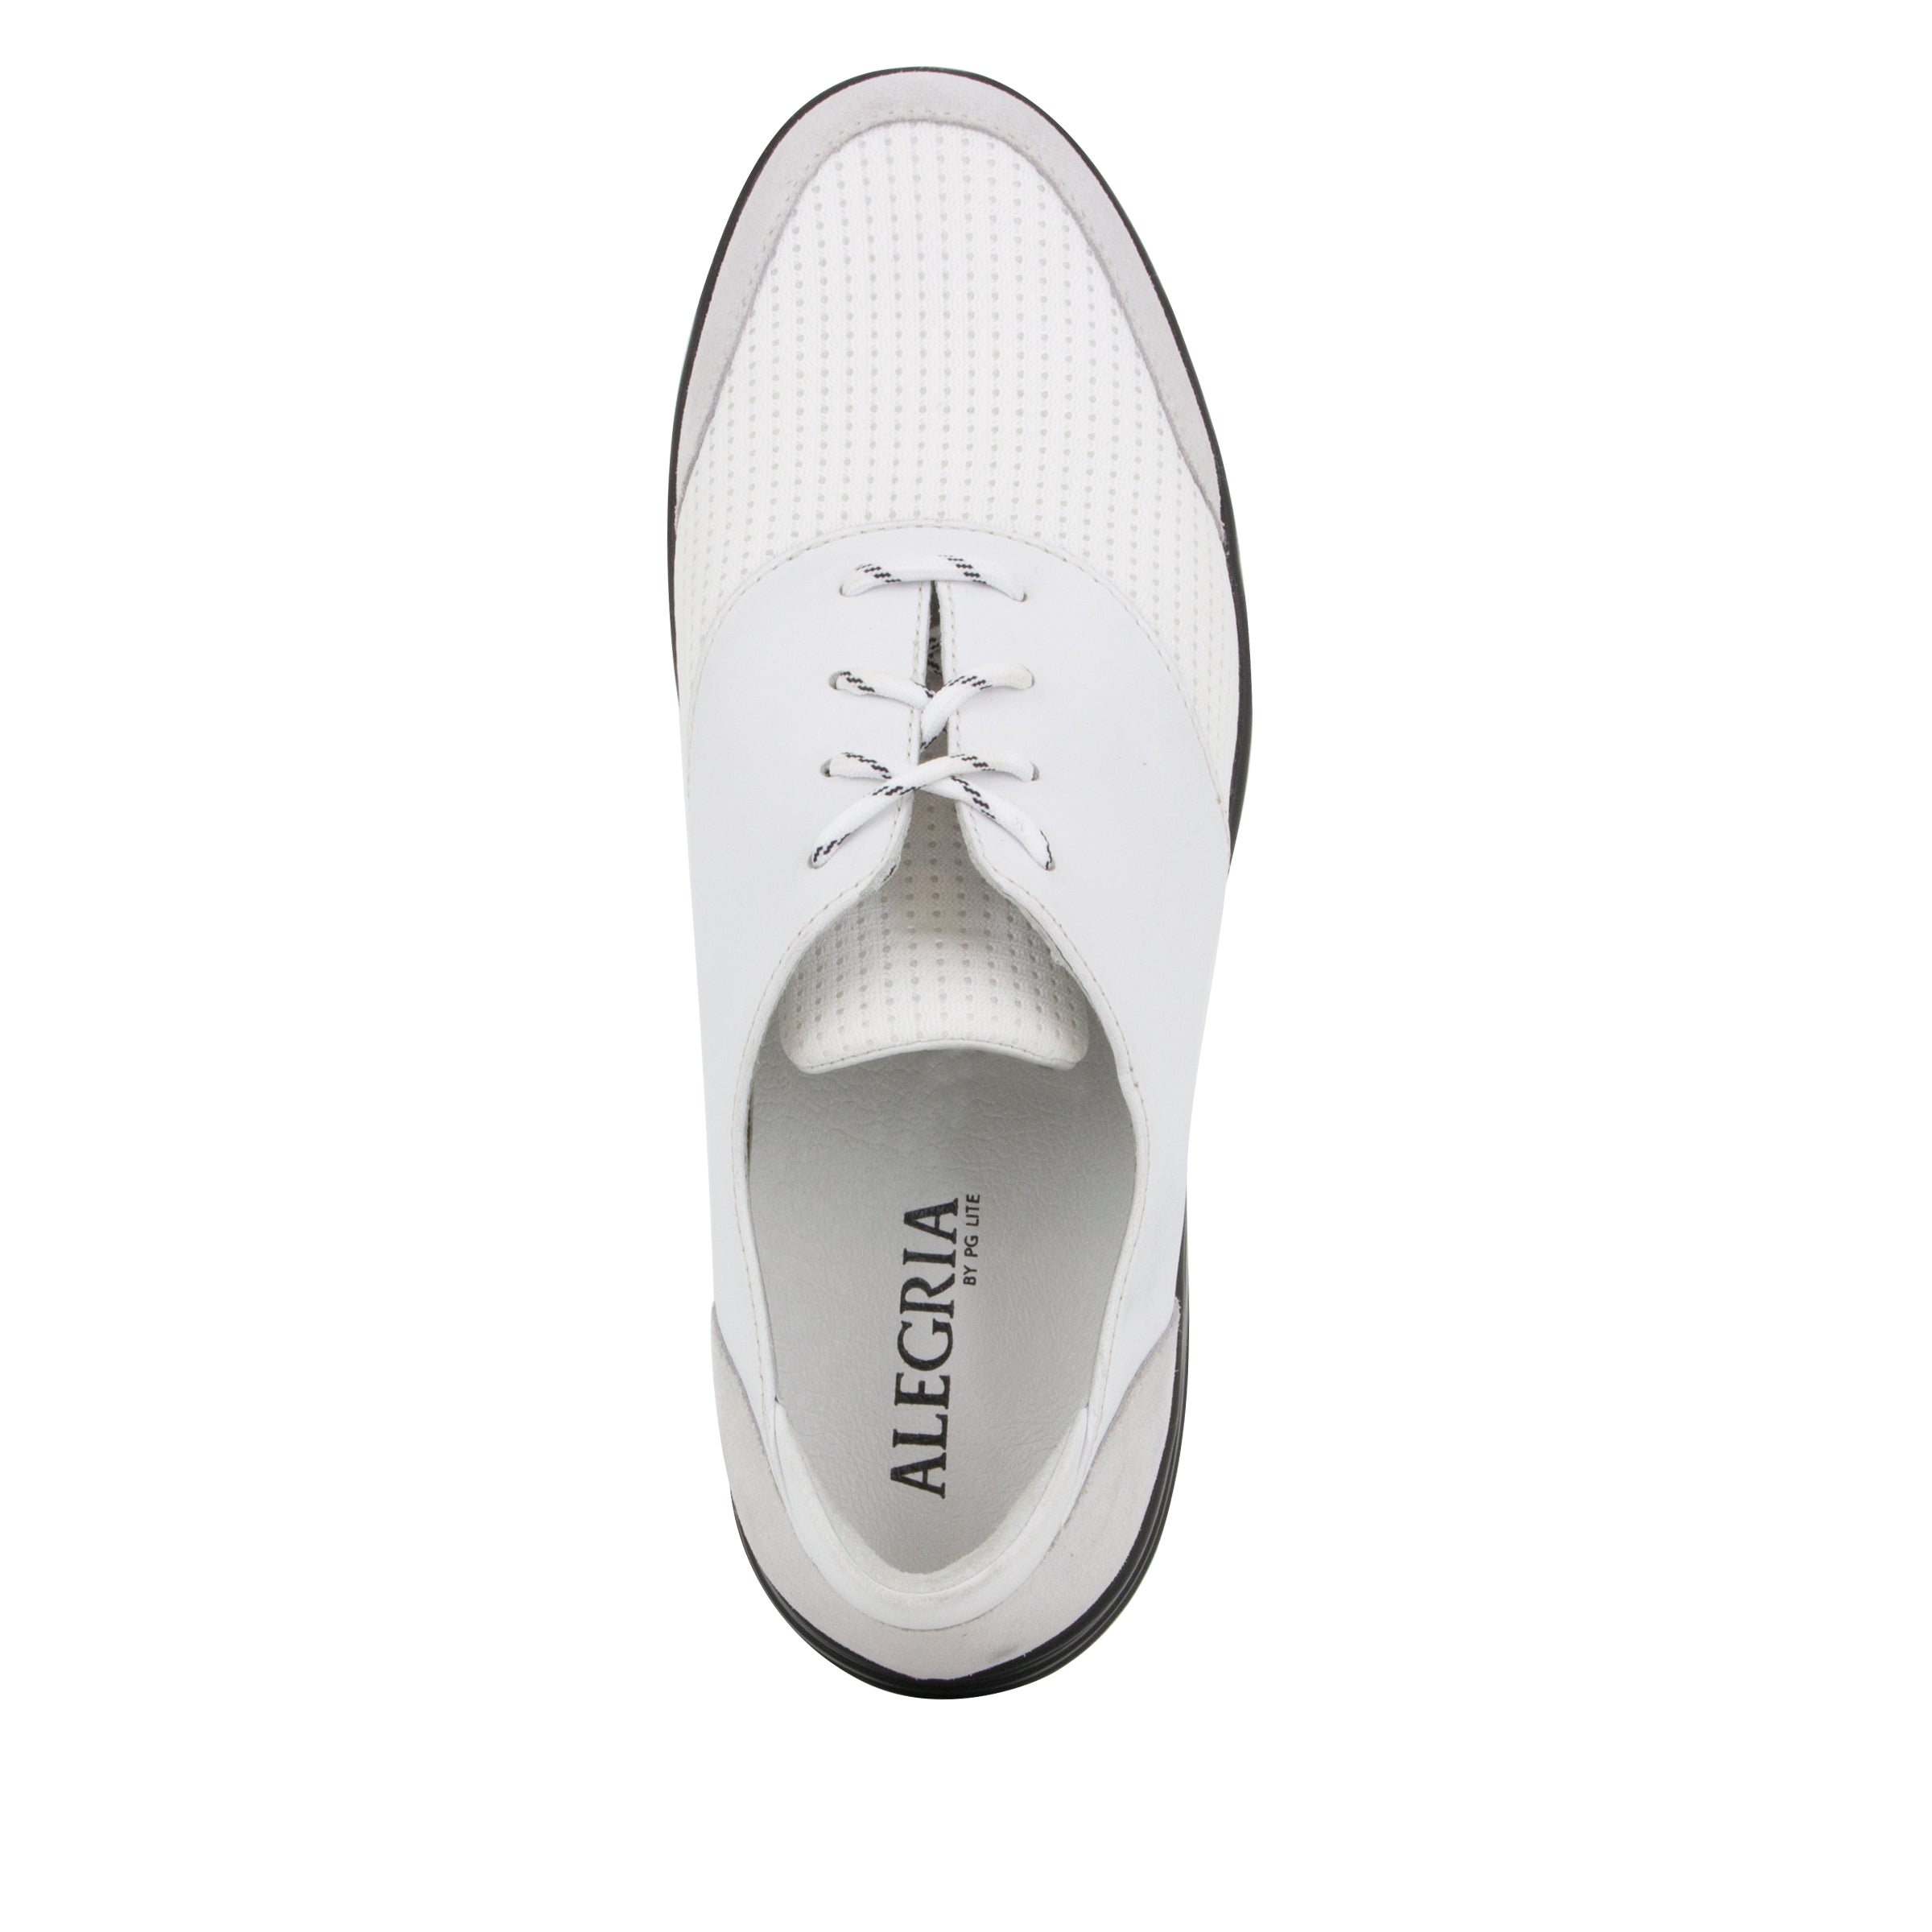 white alegria shoes